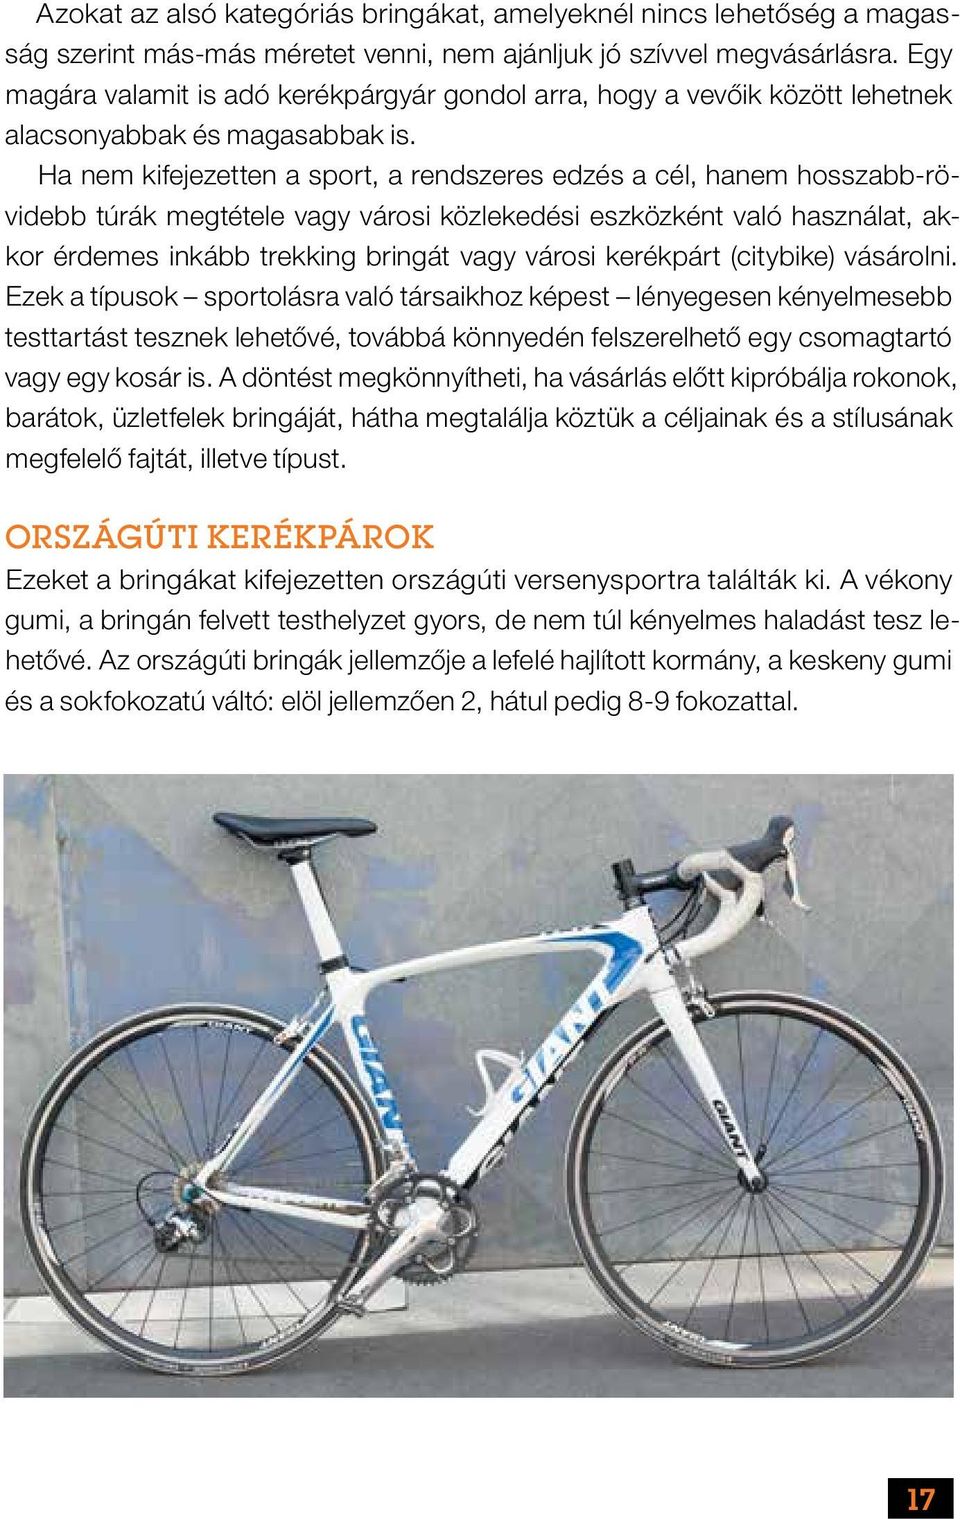 A gyakorlati kerékpár használata a prosztatitishez)